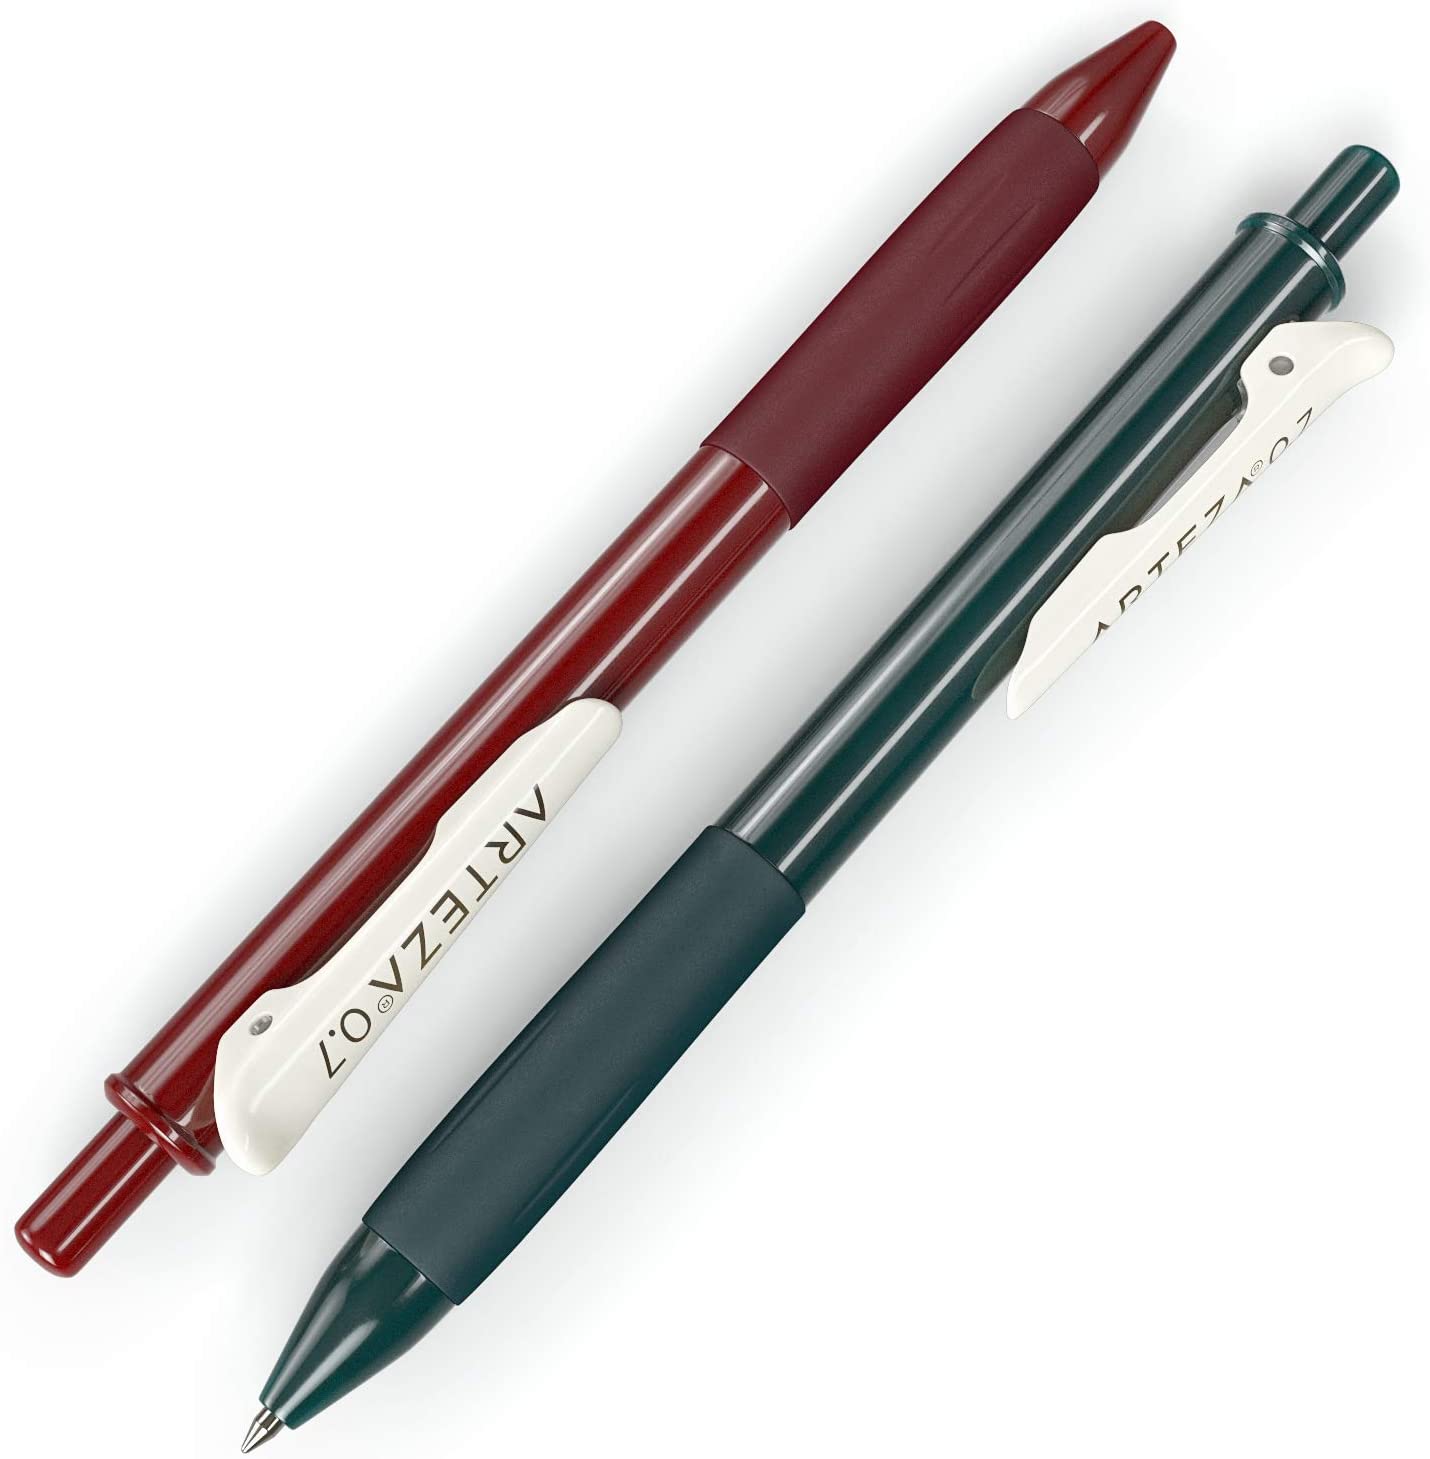 https://arteza.com/cdn/shop/products/retractable-gel-ink-pens-vintage-colors-set-of-10_Ulc23qaP.jpg?v=1666271821&width=1445